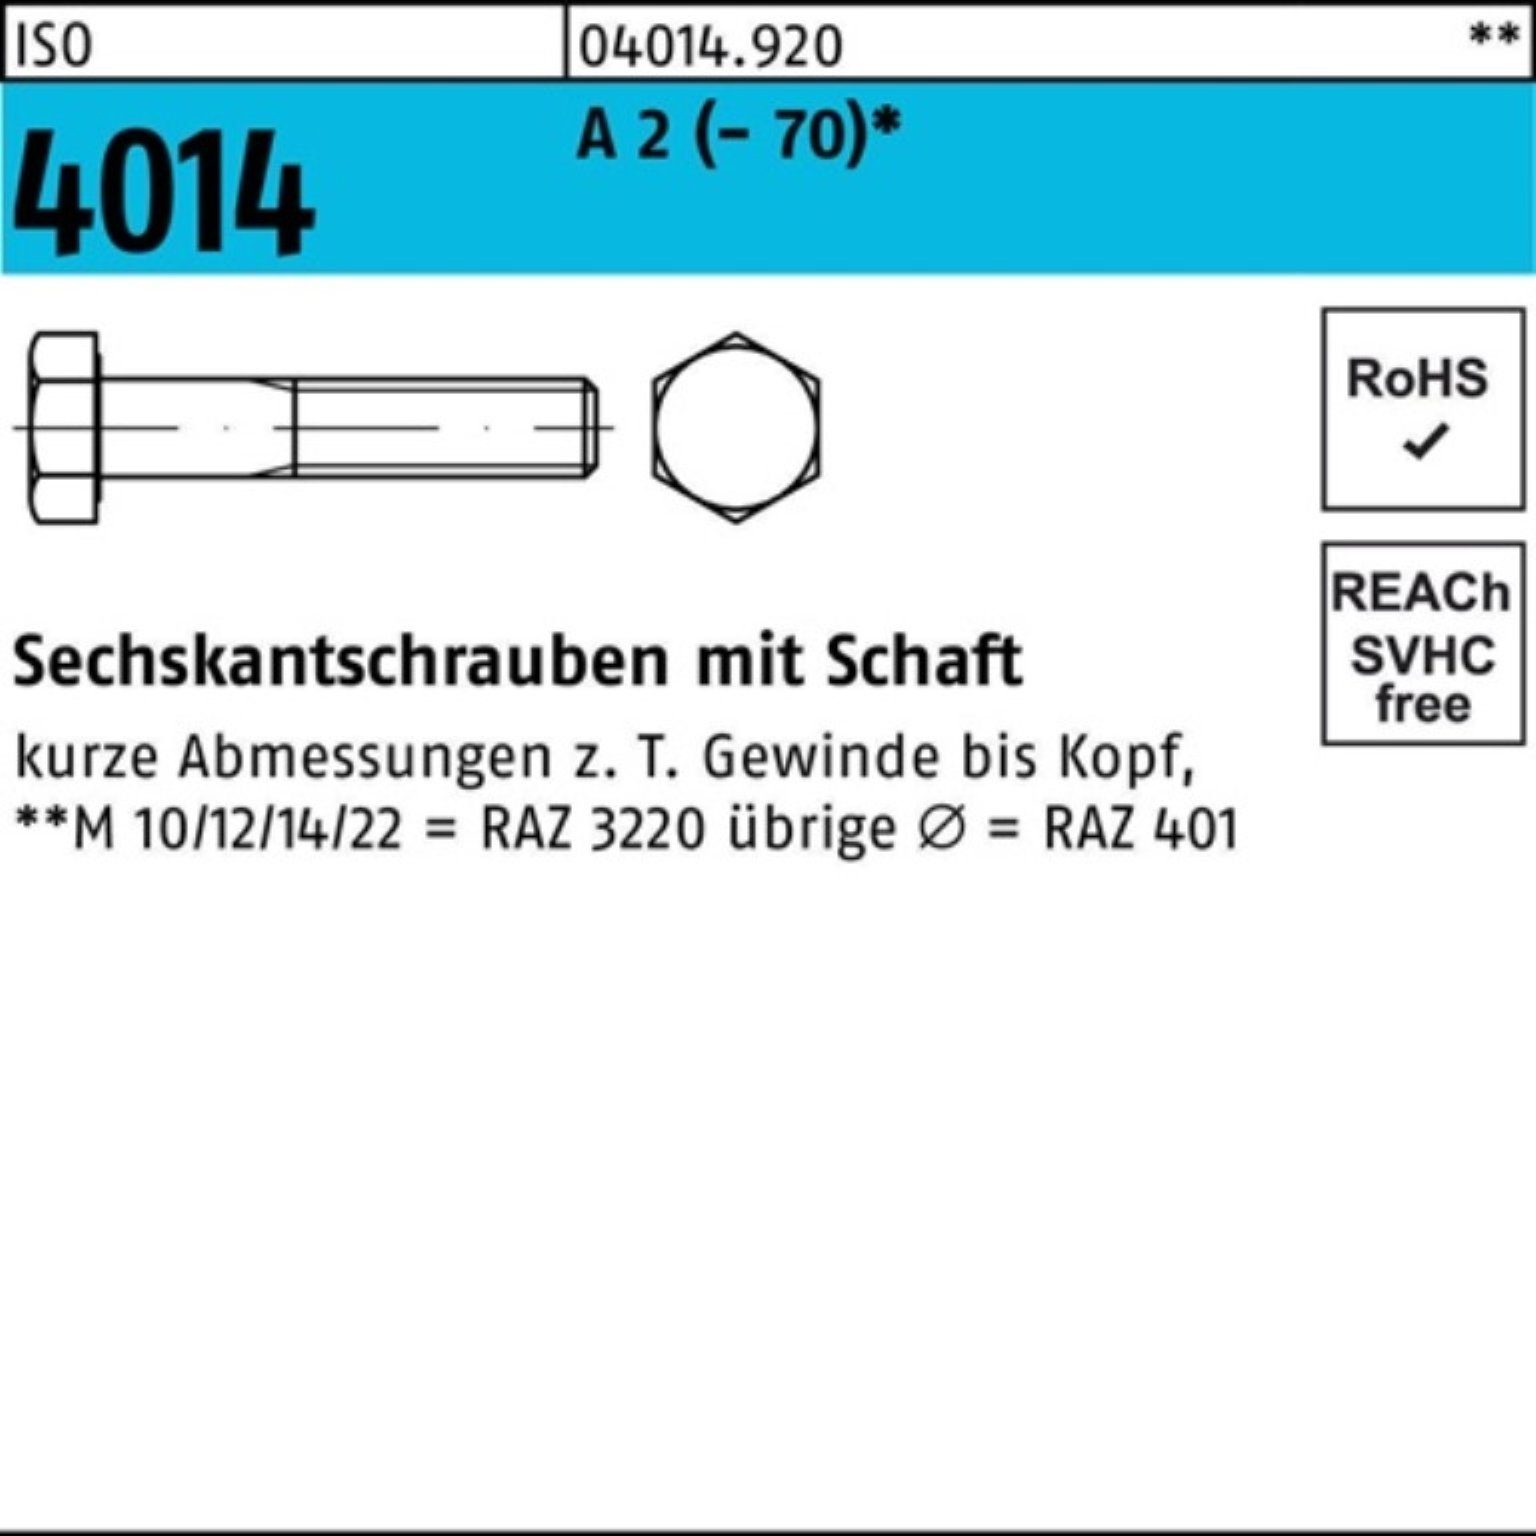 Bufab Sechskantschraube 100er Schaft ISO A 220 St 2 Pack (70) M16x Sechskantschraube 4014 1